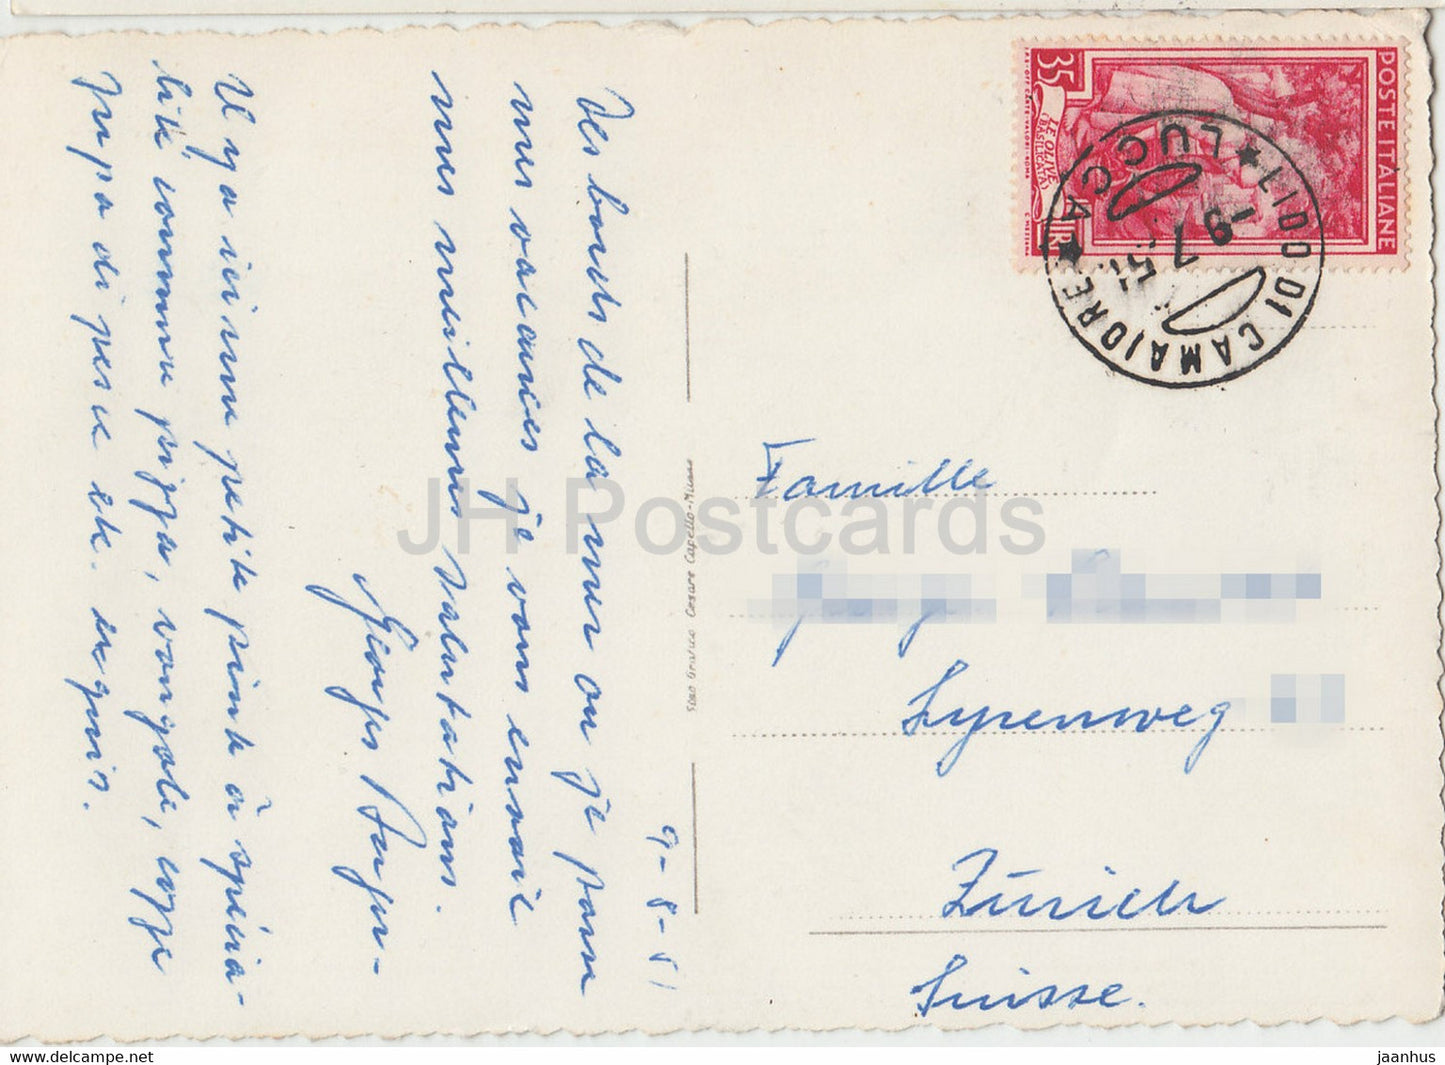 Lido di Camaiore – Piazza Matteotti – Platz – alte Postkarte – 1951 – Italien – gebraucht